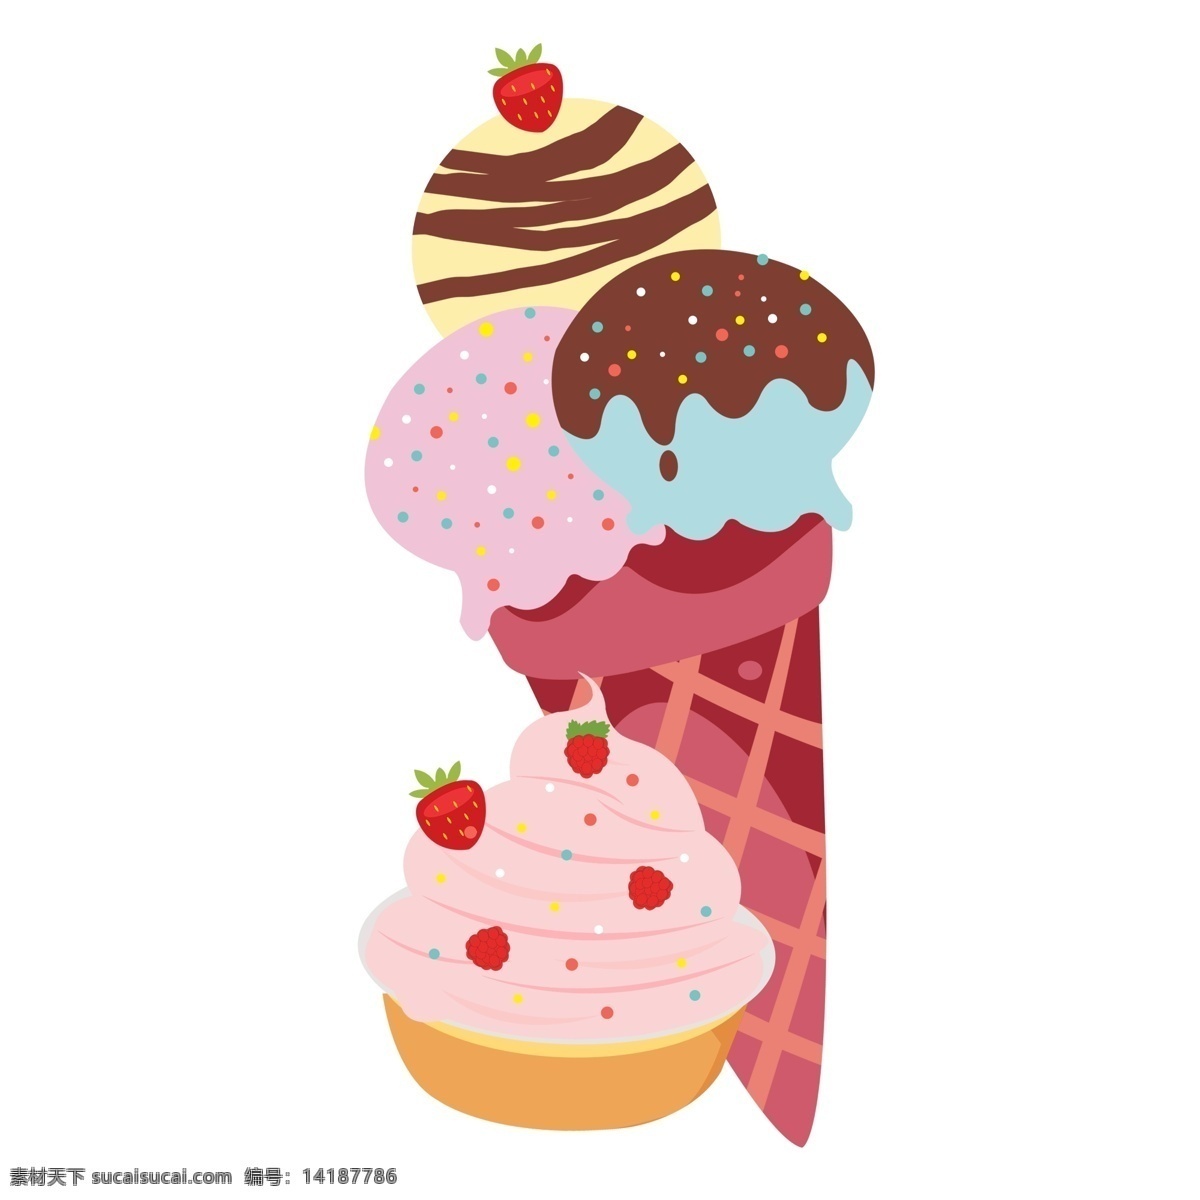 夏季 草莓 冰淇淋 图案 元素 美食 蛋糕 草莓冰淇淋 巧克力冰淇淋 冰淇淋图案 设计元素 元素设计 创意元素 免抠元素